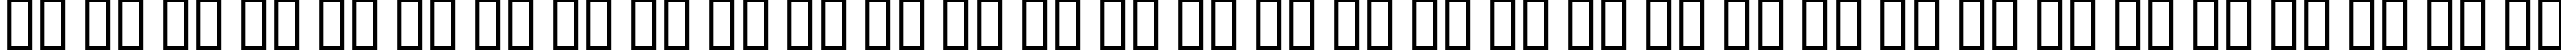 Пример написания русского алфавита шрифтом ZITZ